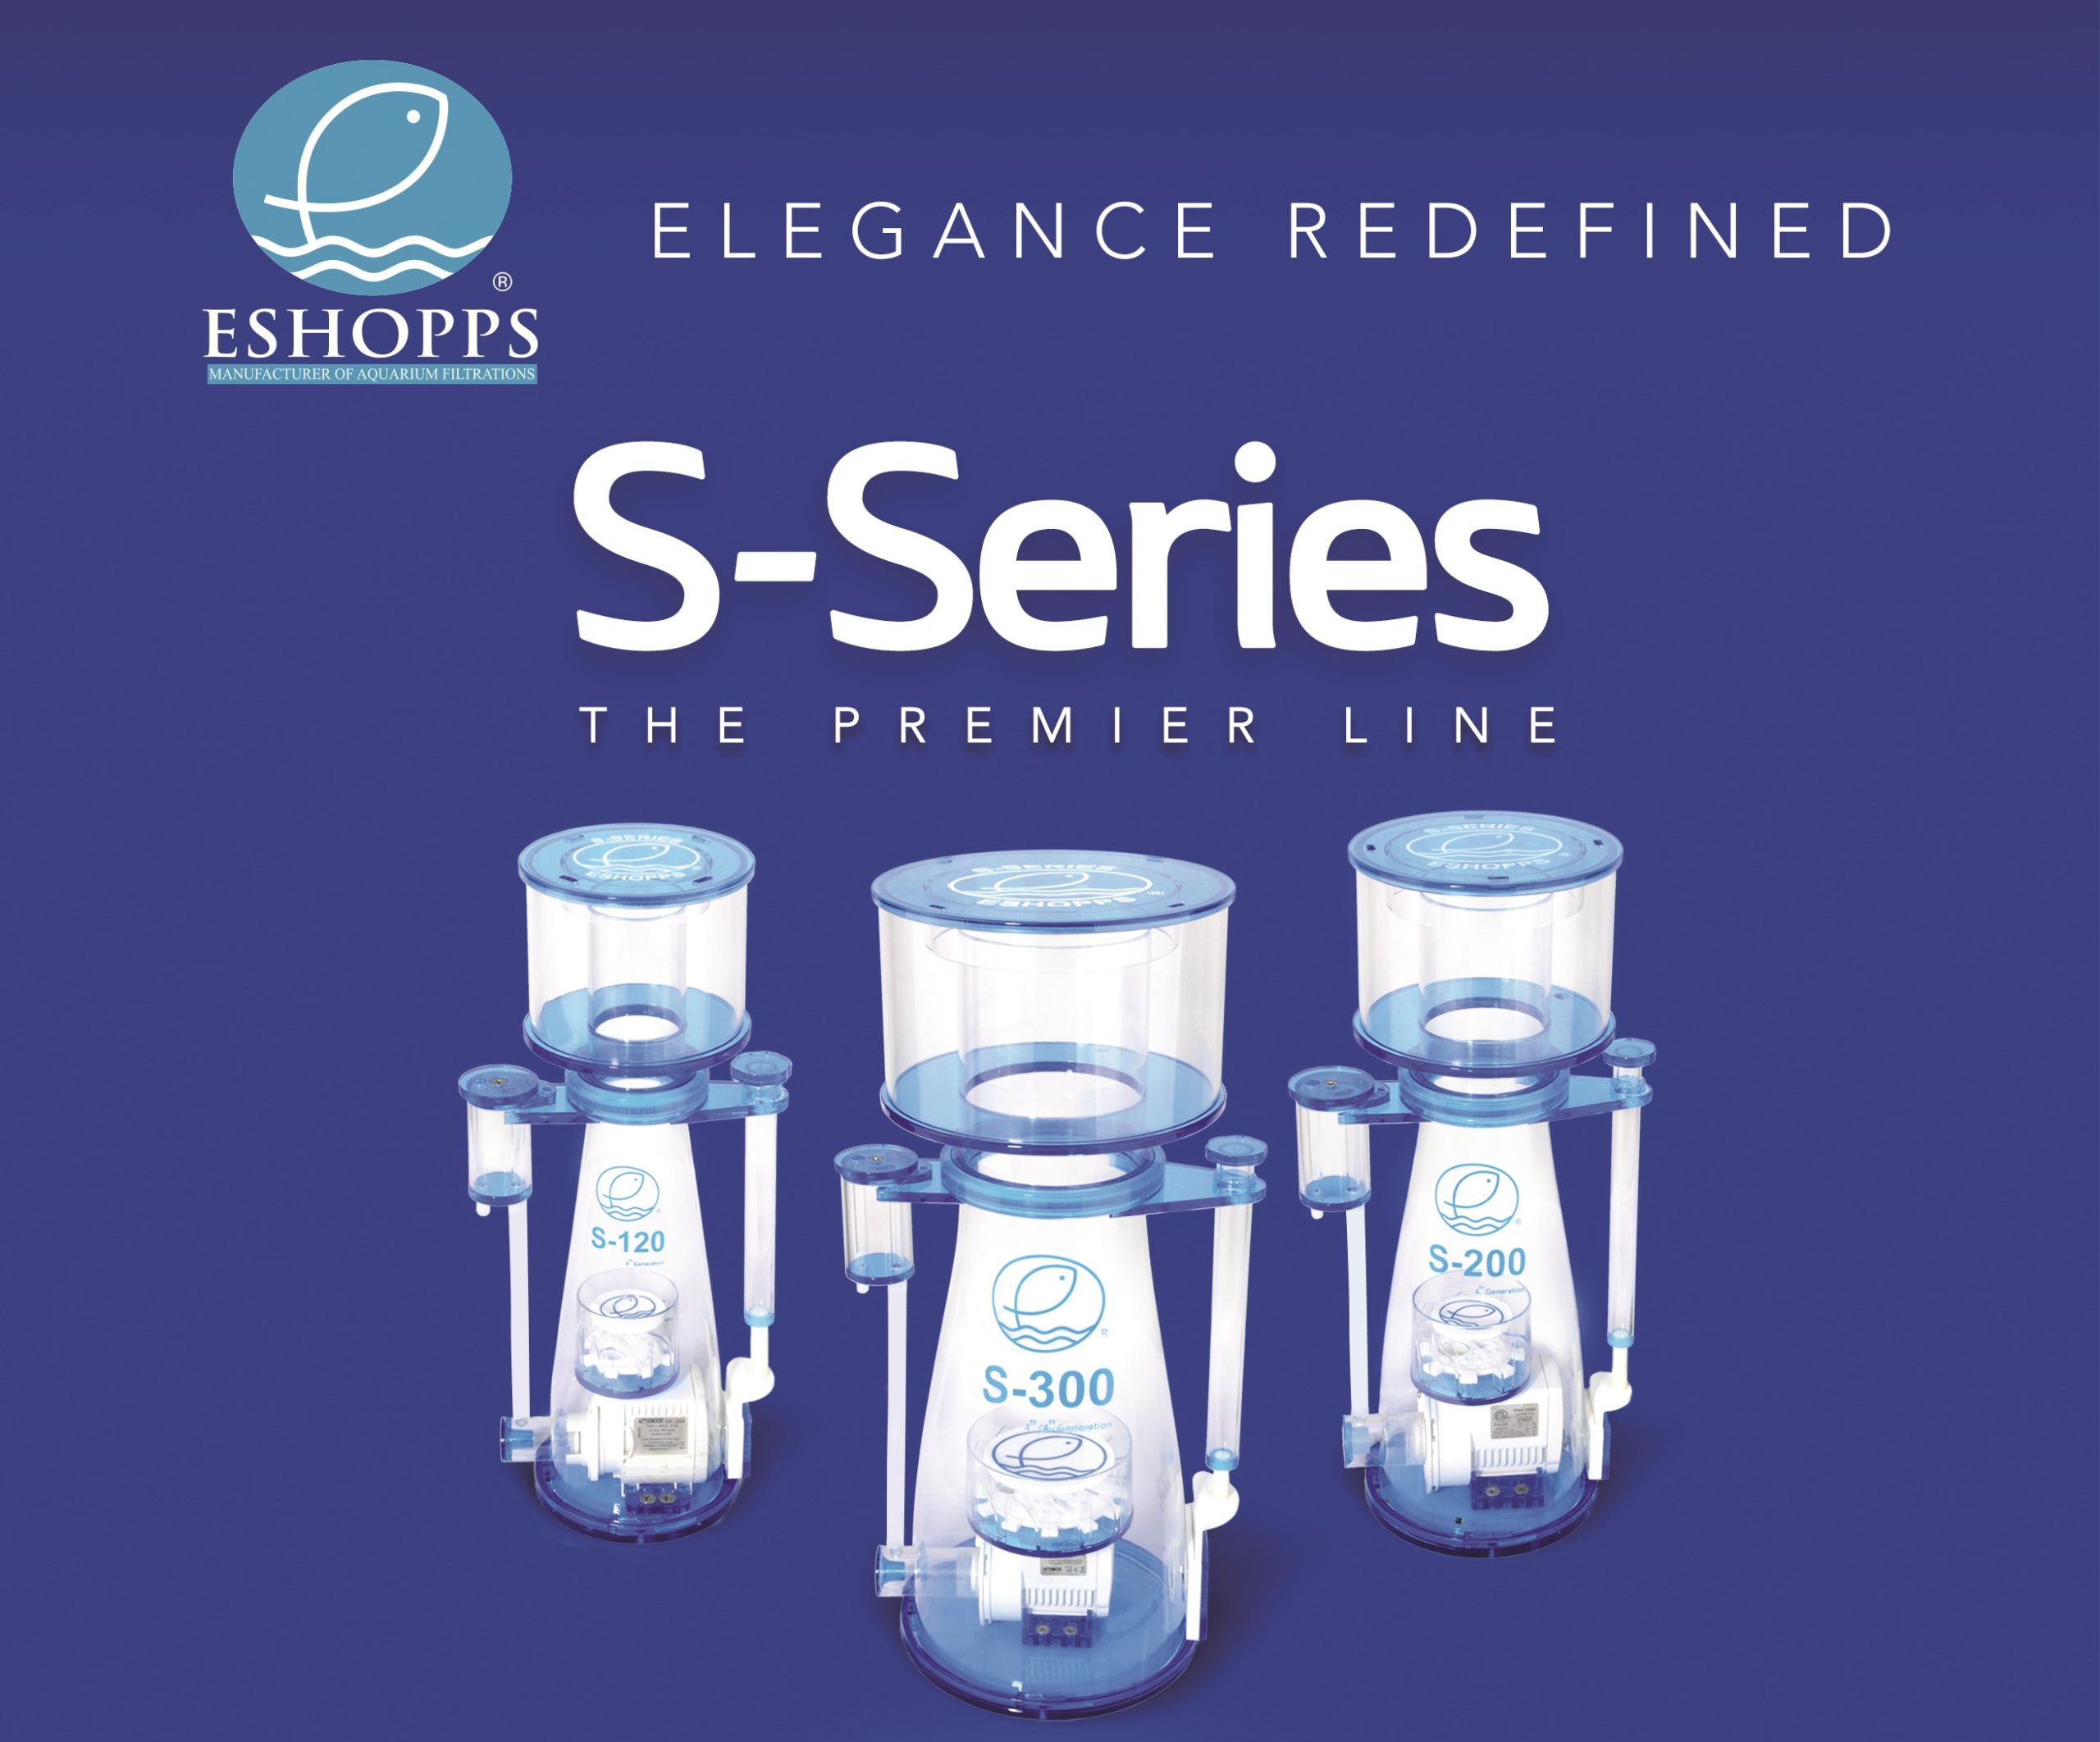 ESHOPPS New S-Series Premier Line